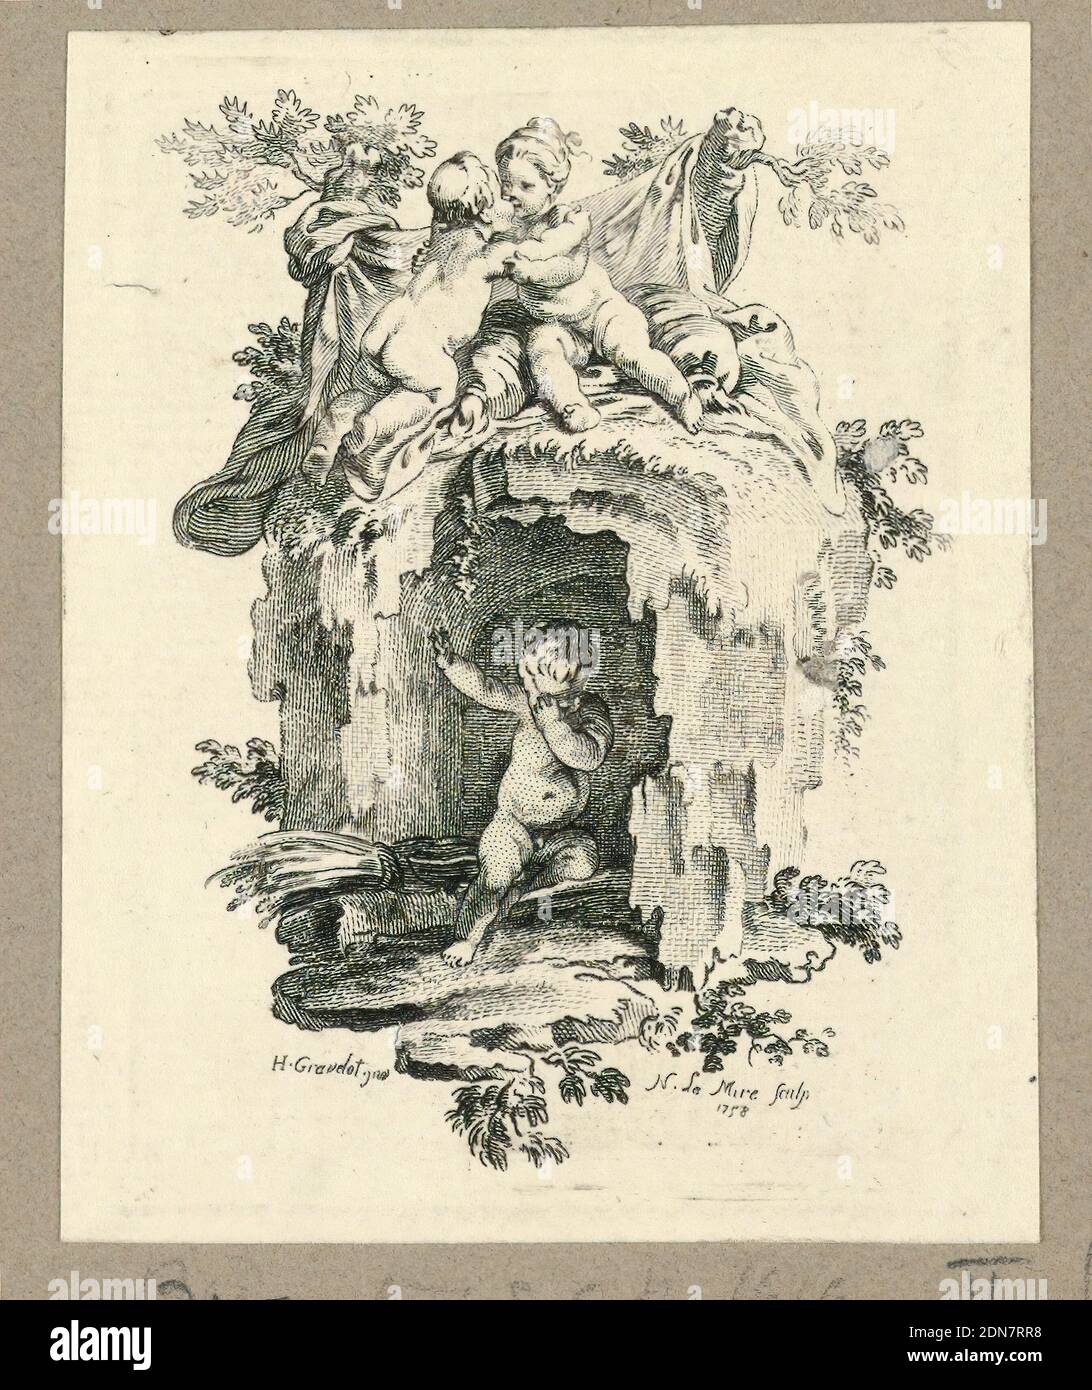 Cherubs Around a Cave, Gravelot, francese, 1699 - 1773, attivo in Inghilterra, Noël le Mire, francese, 1724 - 1801, incisione su carta, due cherubini si abbracciano su una grotta, in hich un ragazzo è tenuto prigioniero., Francia, 1758, Stampa Foto Stock